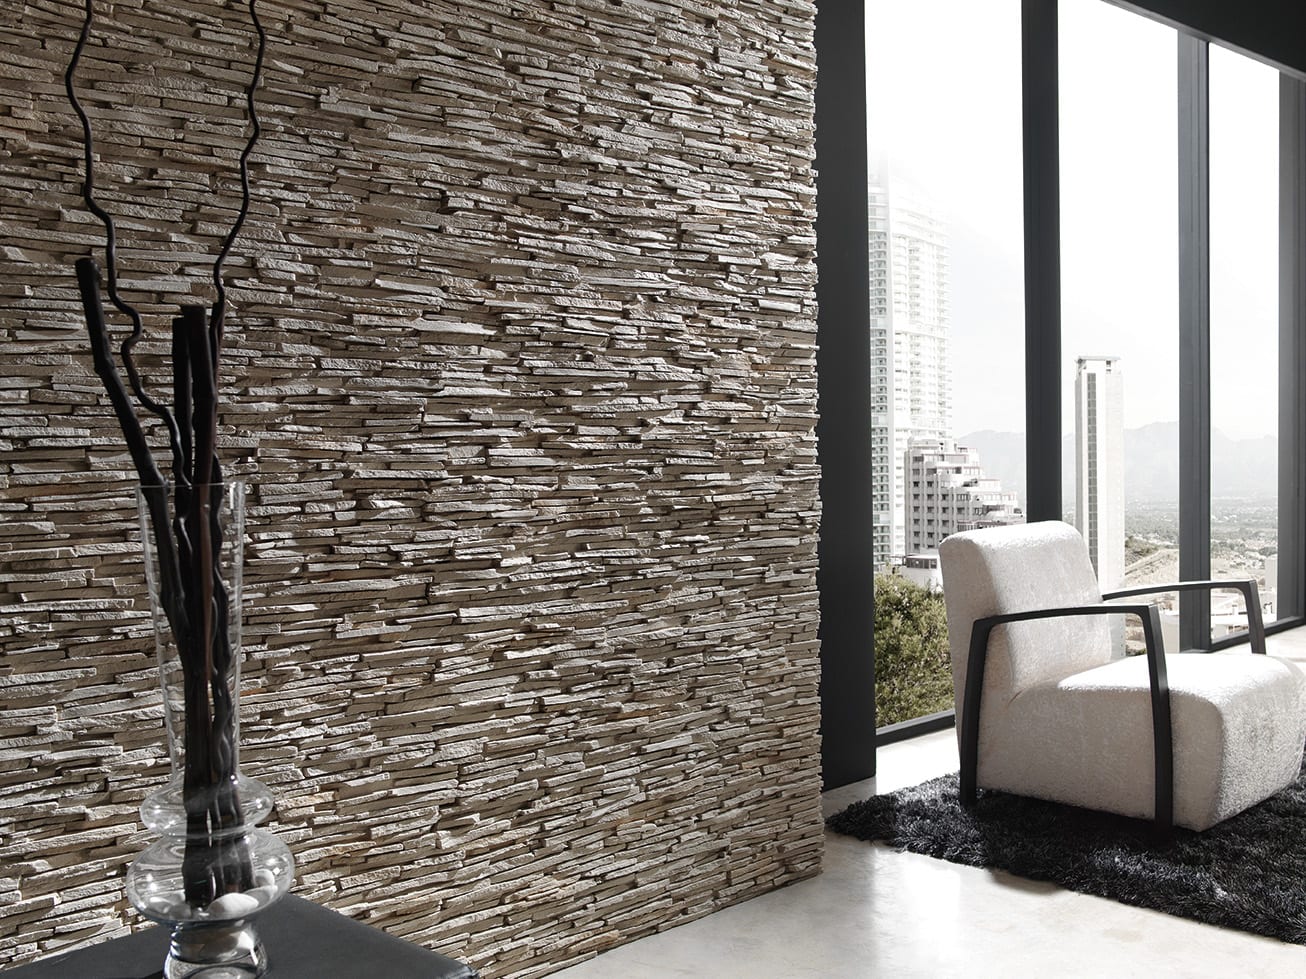 Paneles de piedra decorativa para el revestimiento de paredes exteriores  del edificio como fondo y textura natural